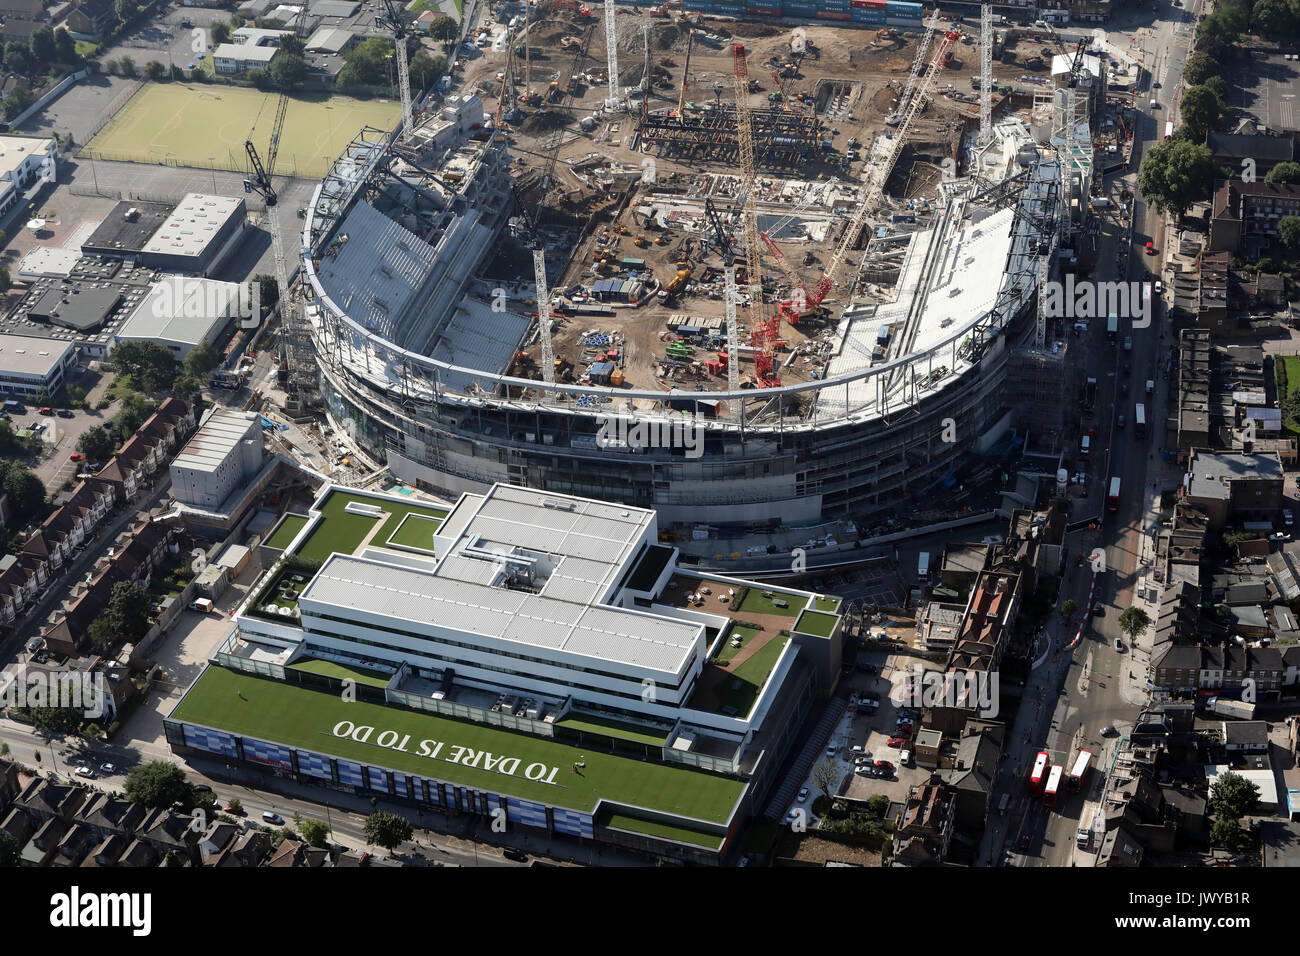 Vista aérea de Tottenham Hotspur White Hart Lane nuevo estadio en construcción, Londres, Reino Unido. Foto de stock